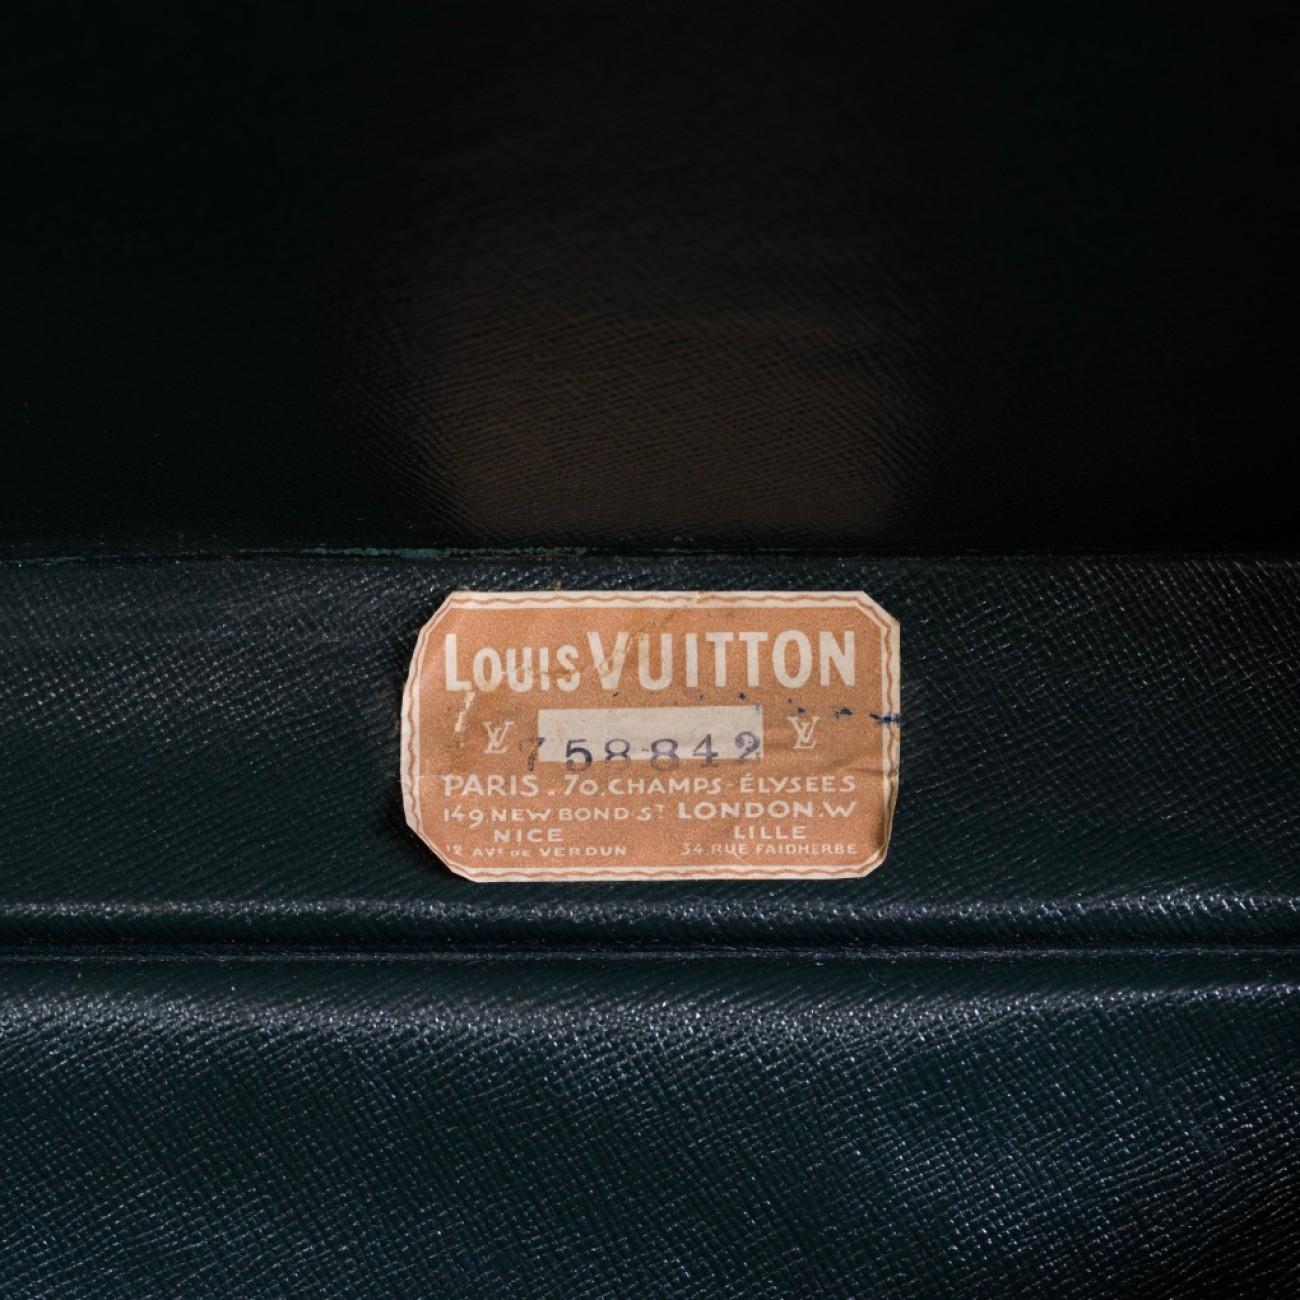 Louis Vuitton Suitcase, circa 1925 1